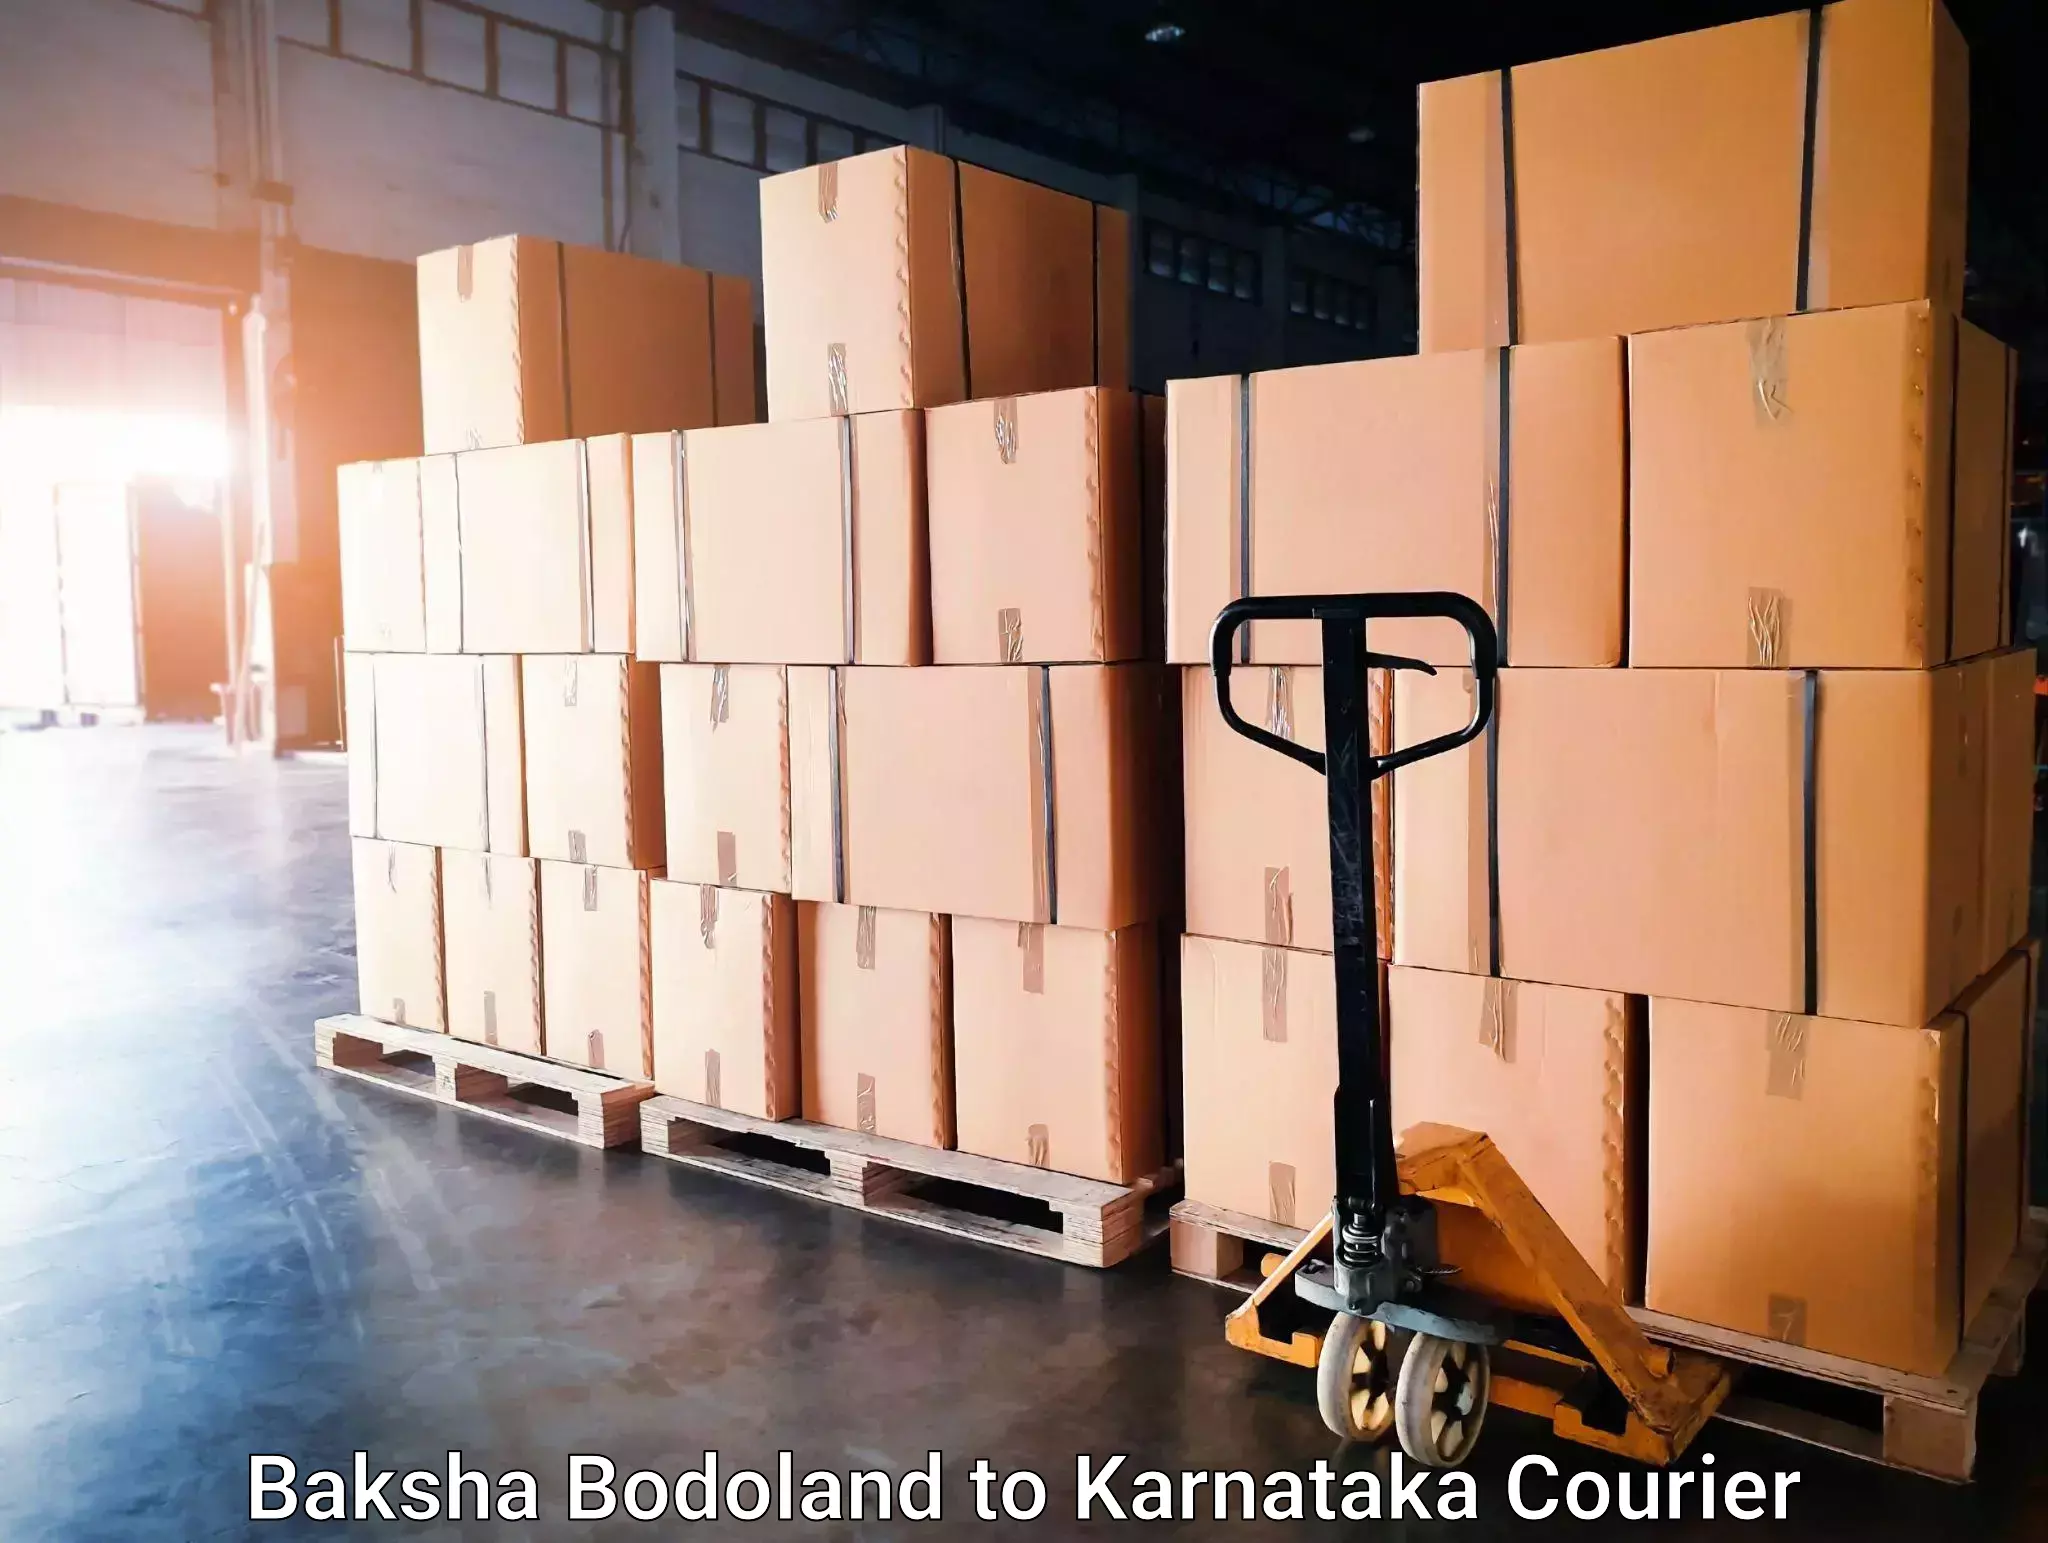 Cargo delivery service Baksha Bodoland to Karnataka